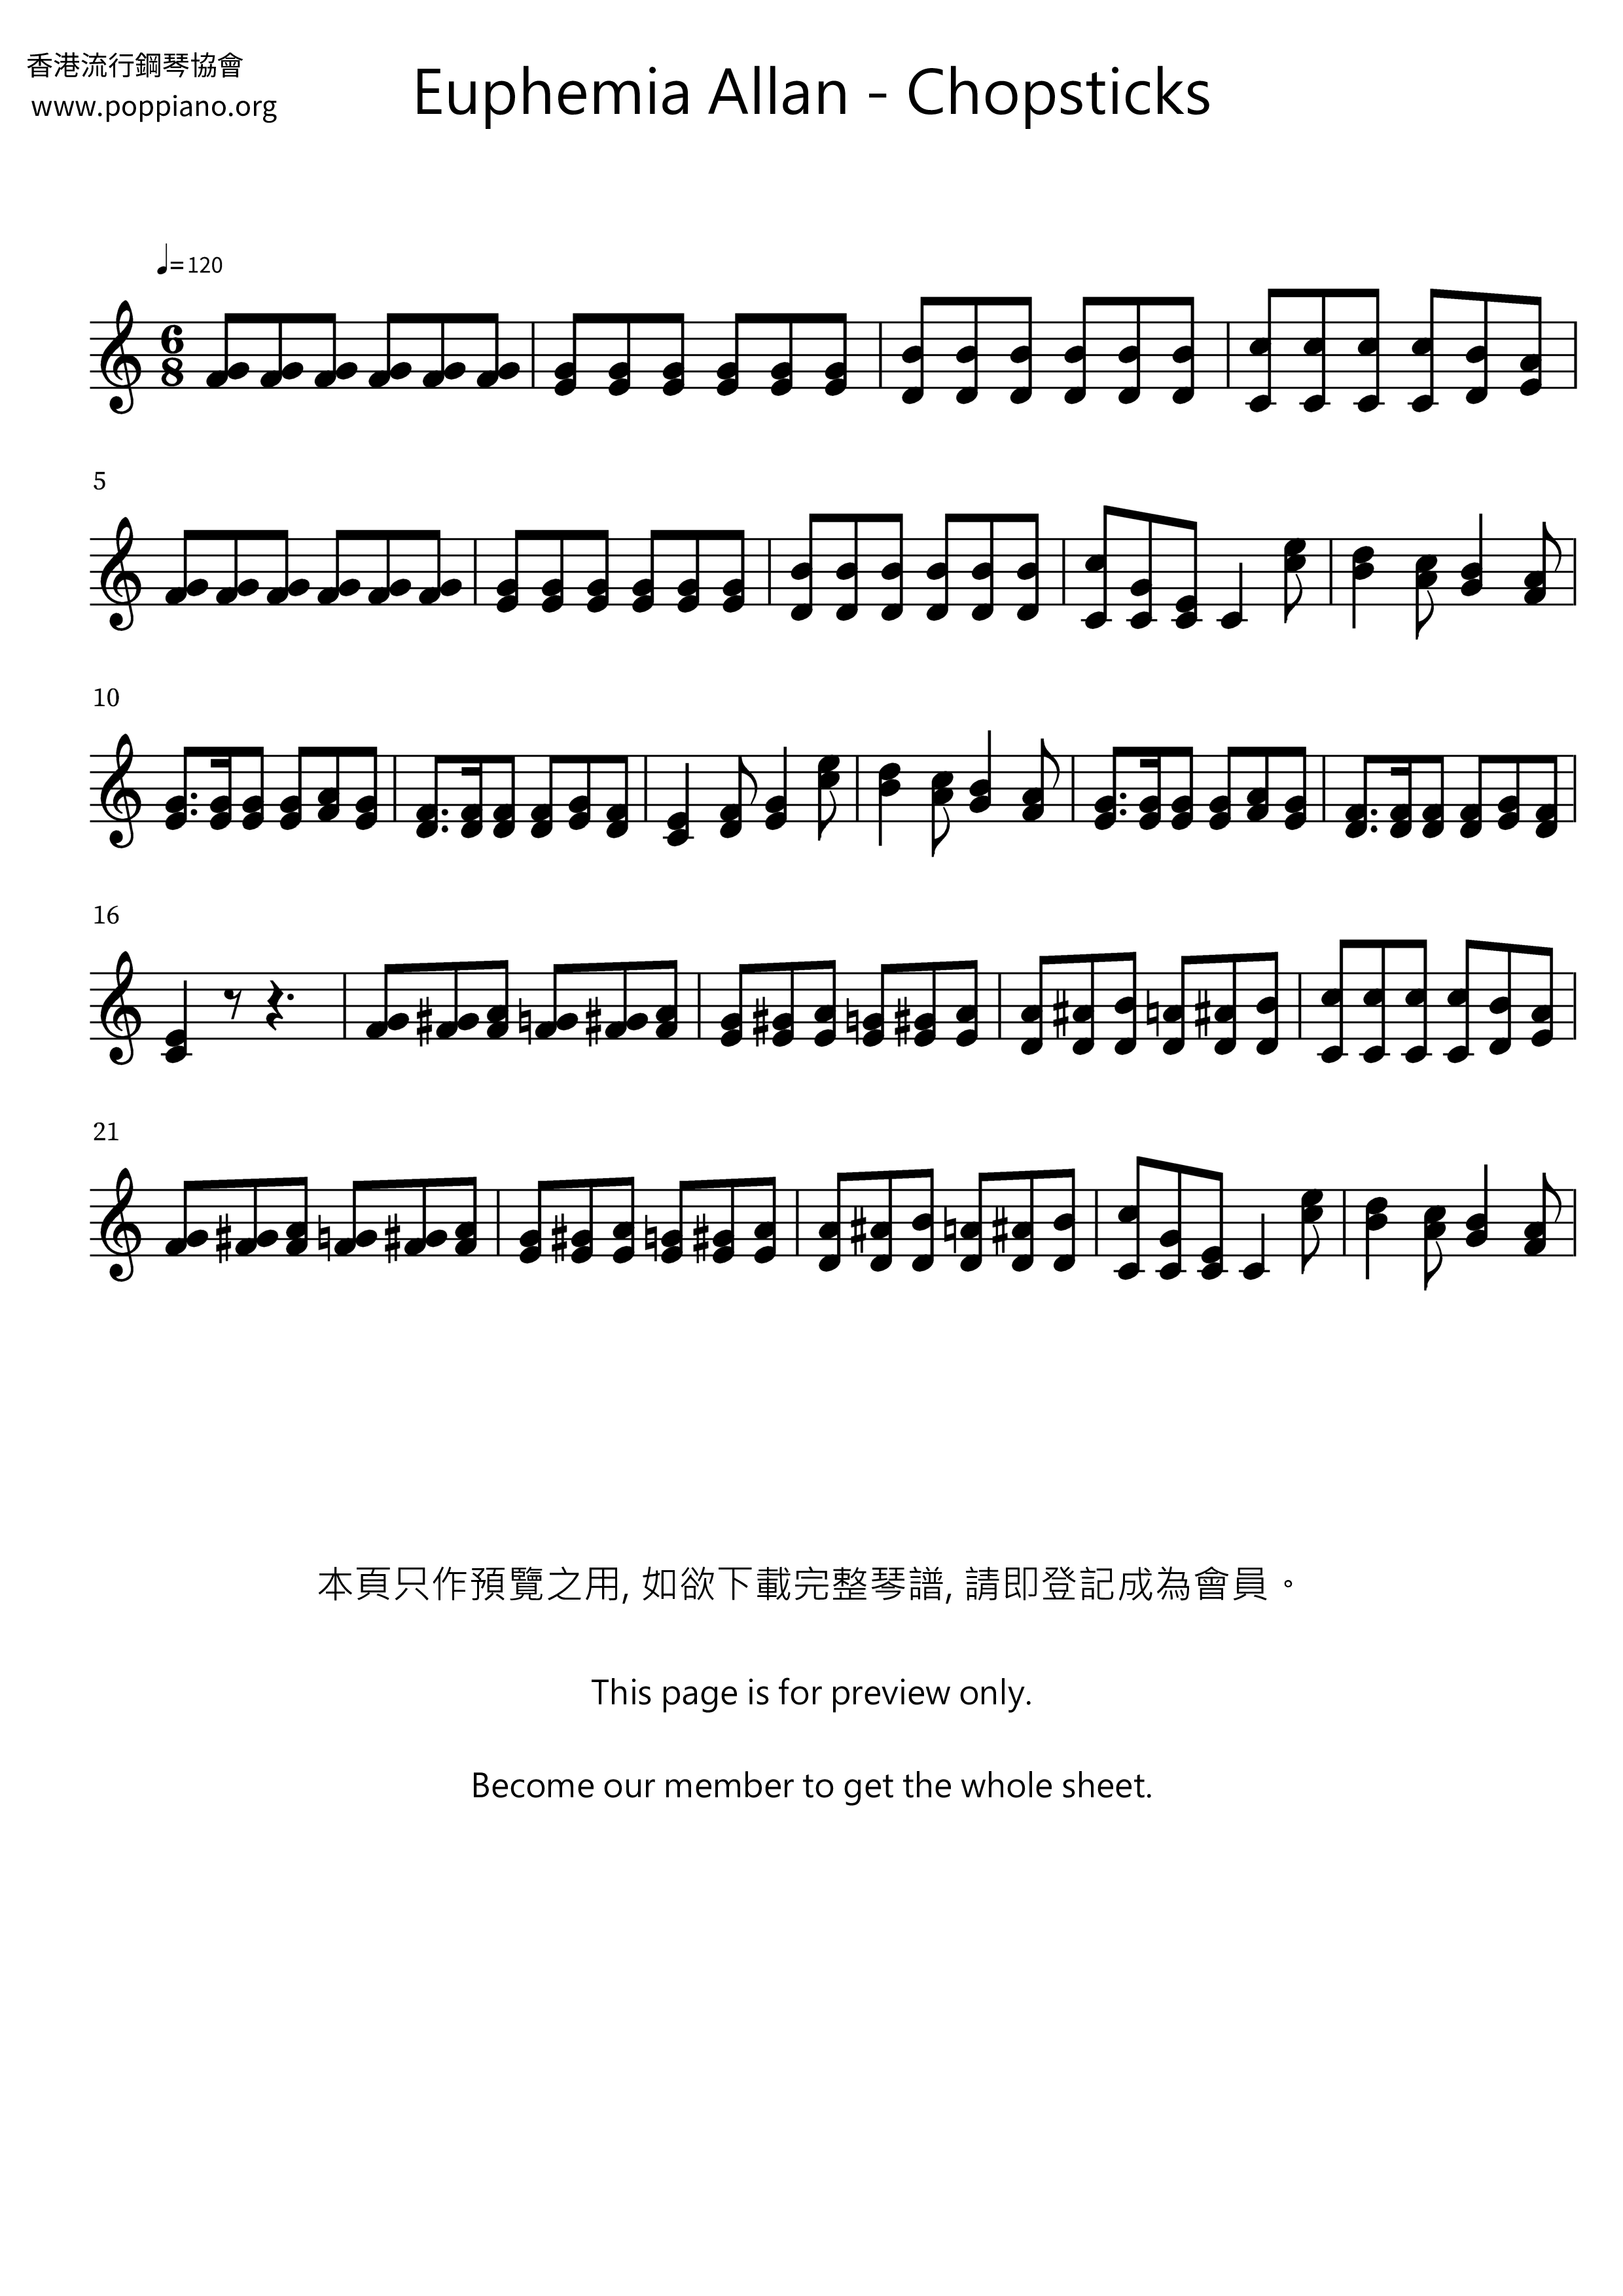 The Celebrated Chop Waltz (Chopsticks) Score